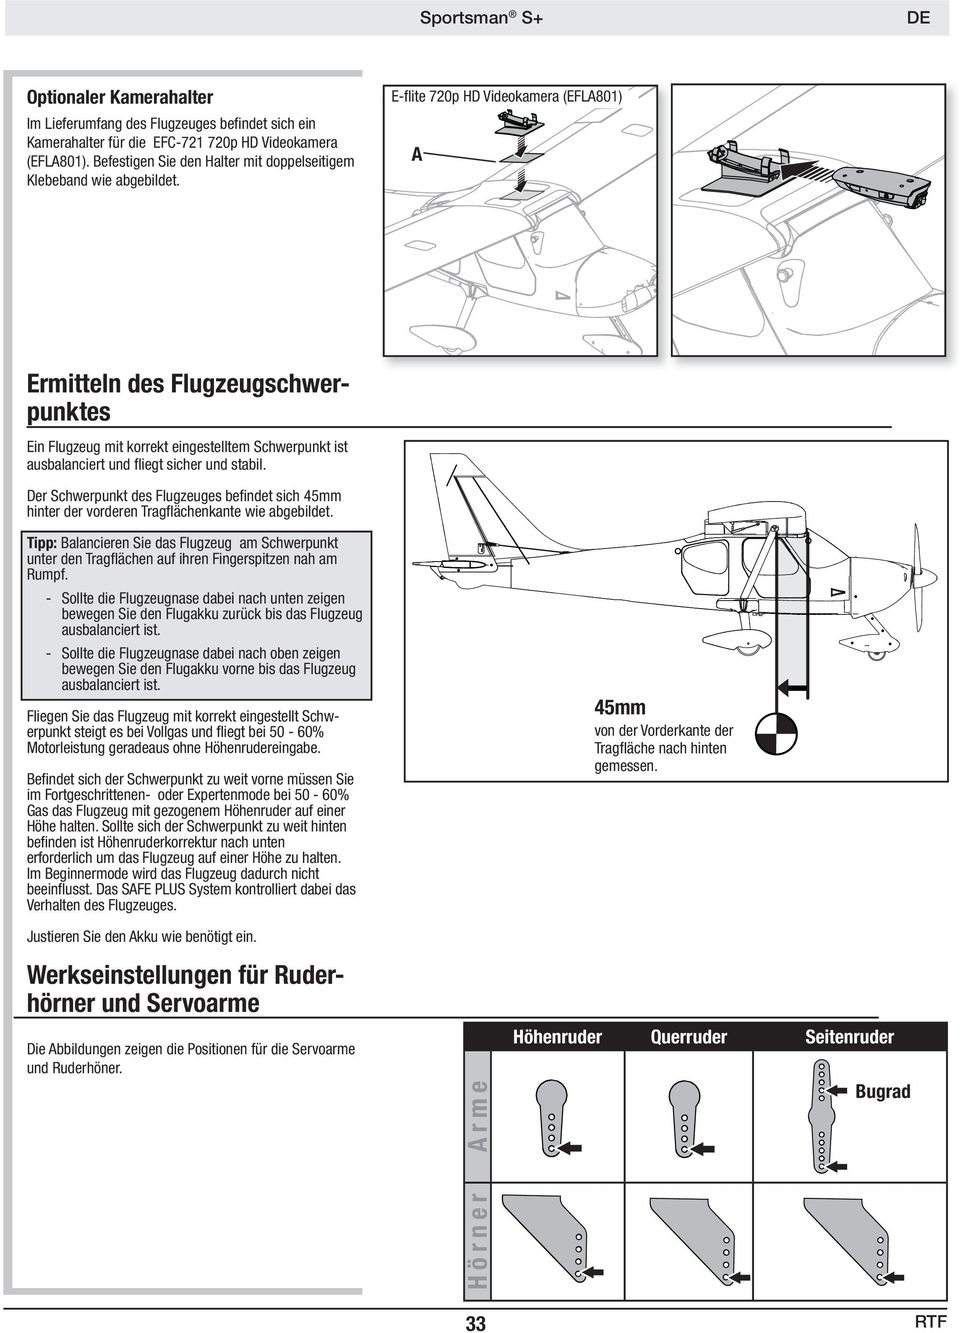 E-fl ite 70p HD Videokamera (EFLA801) A Ermitteln des Flugzeugschwerpunktes Ein Flugzeug mit korrekt eingestelltem Schwerpunkt ist ausbalanciert und fl iegt sicher und stabil.